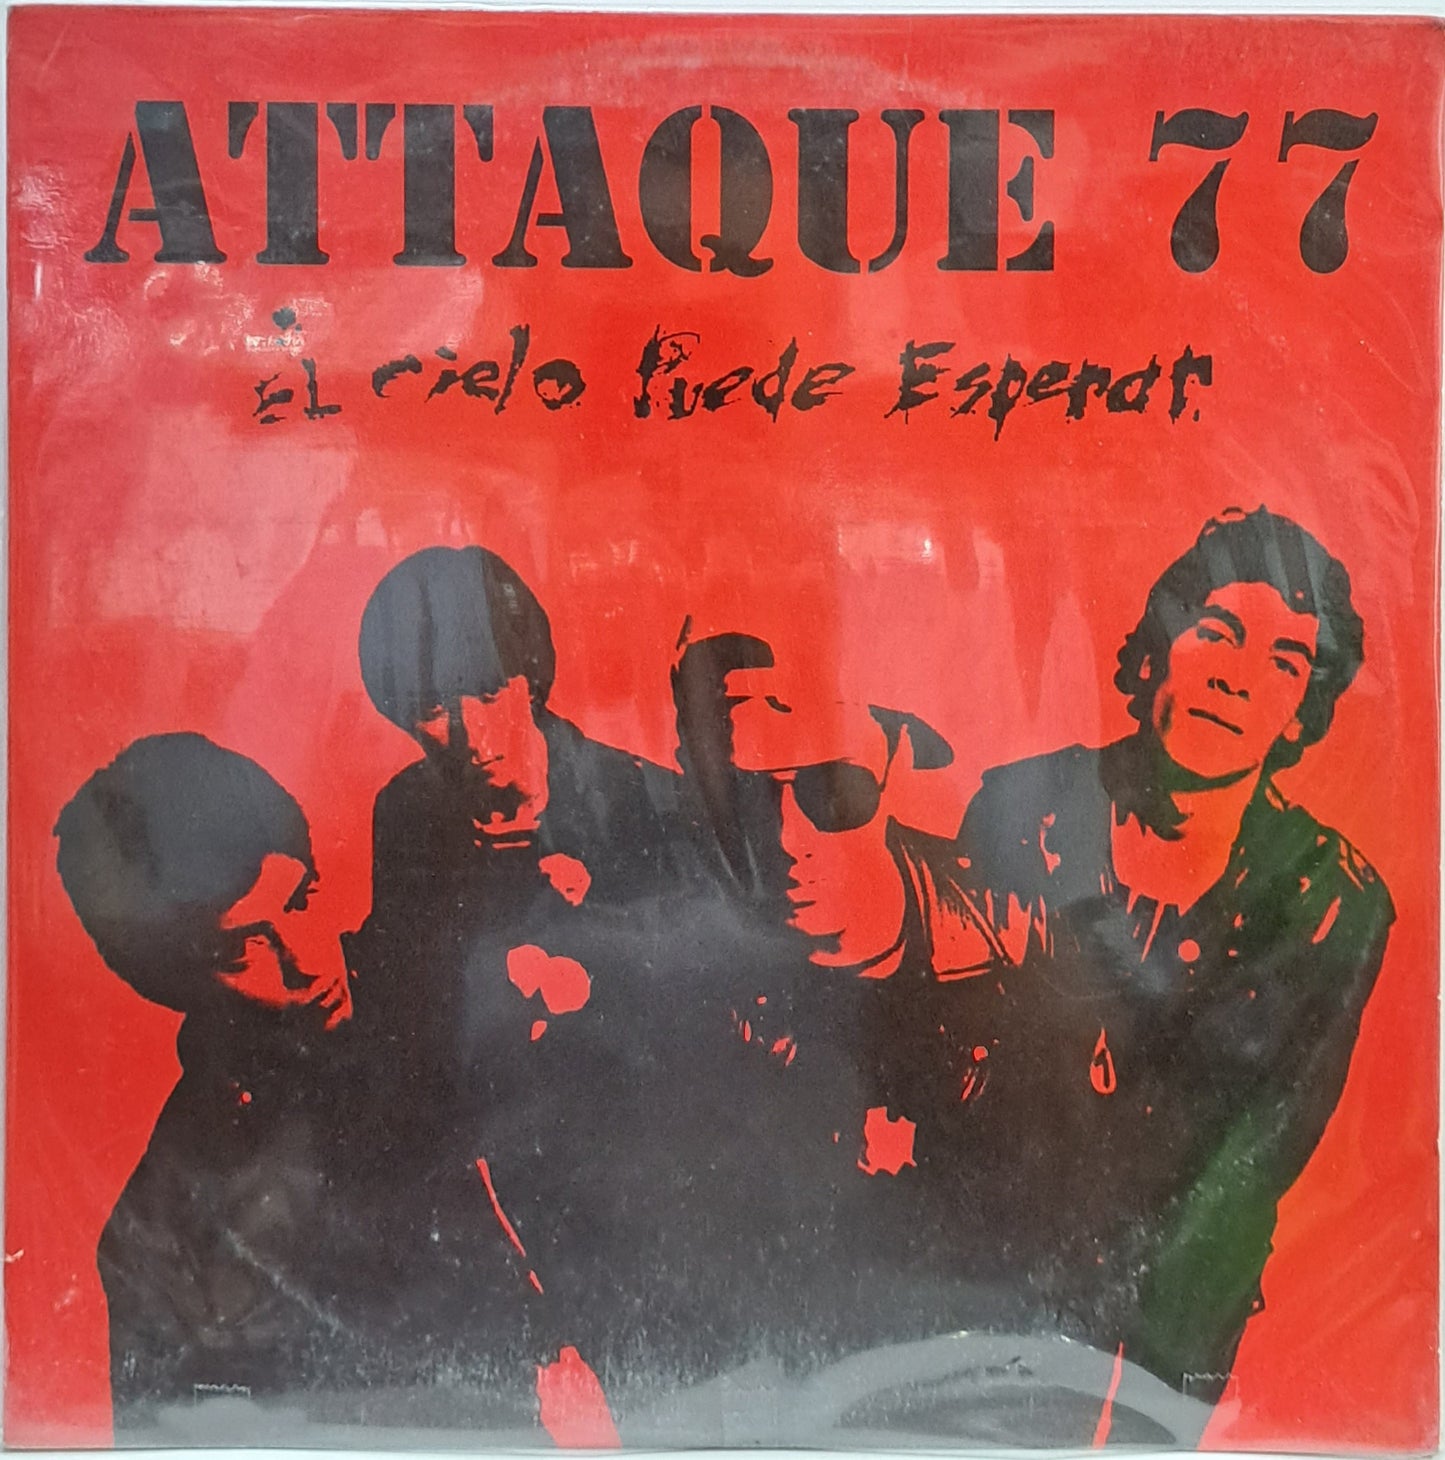 ATTAQUE 77 - EL CIELO PUEDE ESPERARAR  LP